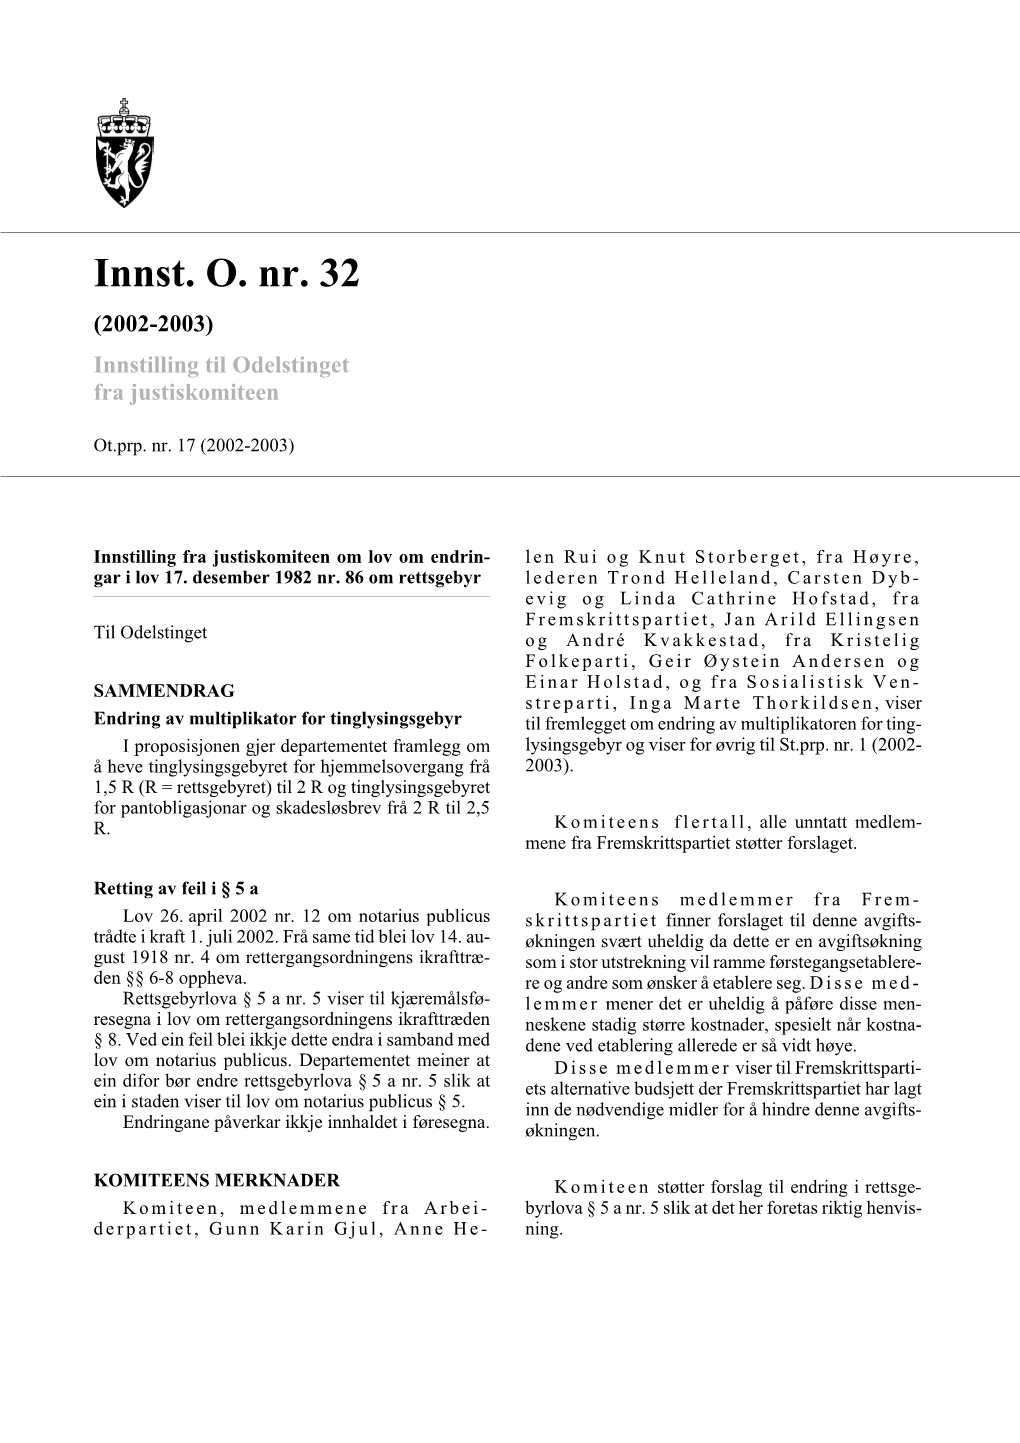 Innst. O. Nr. 32 (2002-2003) Innstilling Til Odelstinget Fra Justiskomiteen